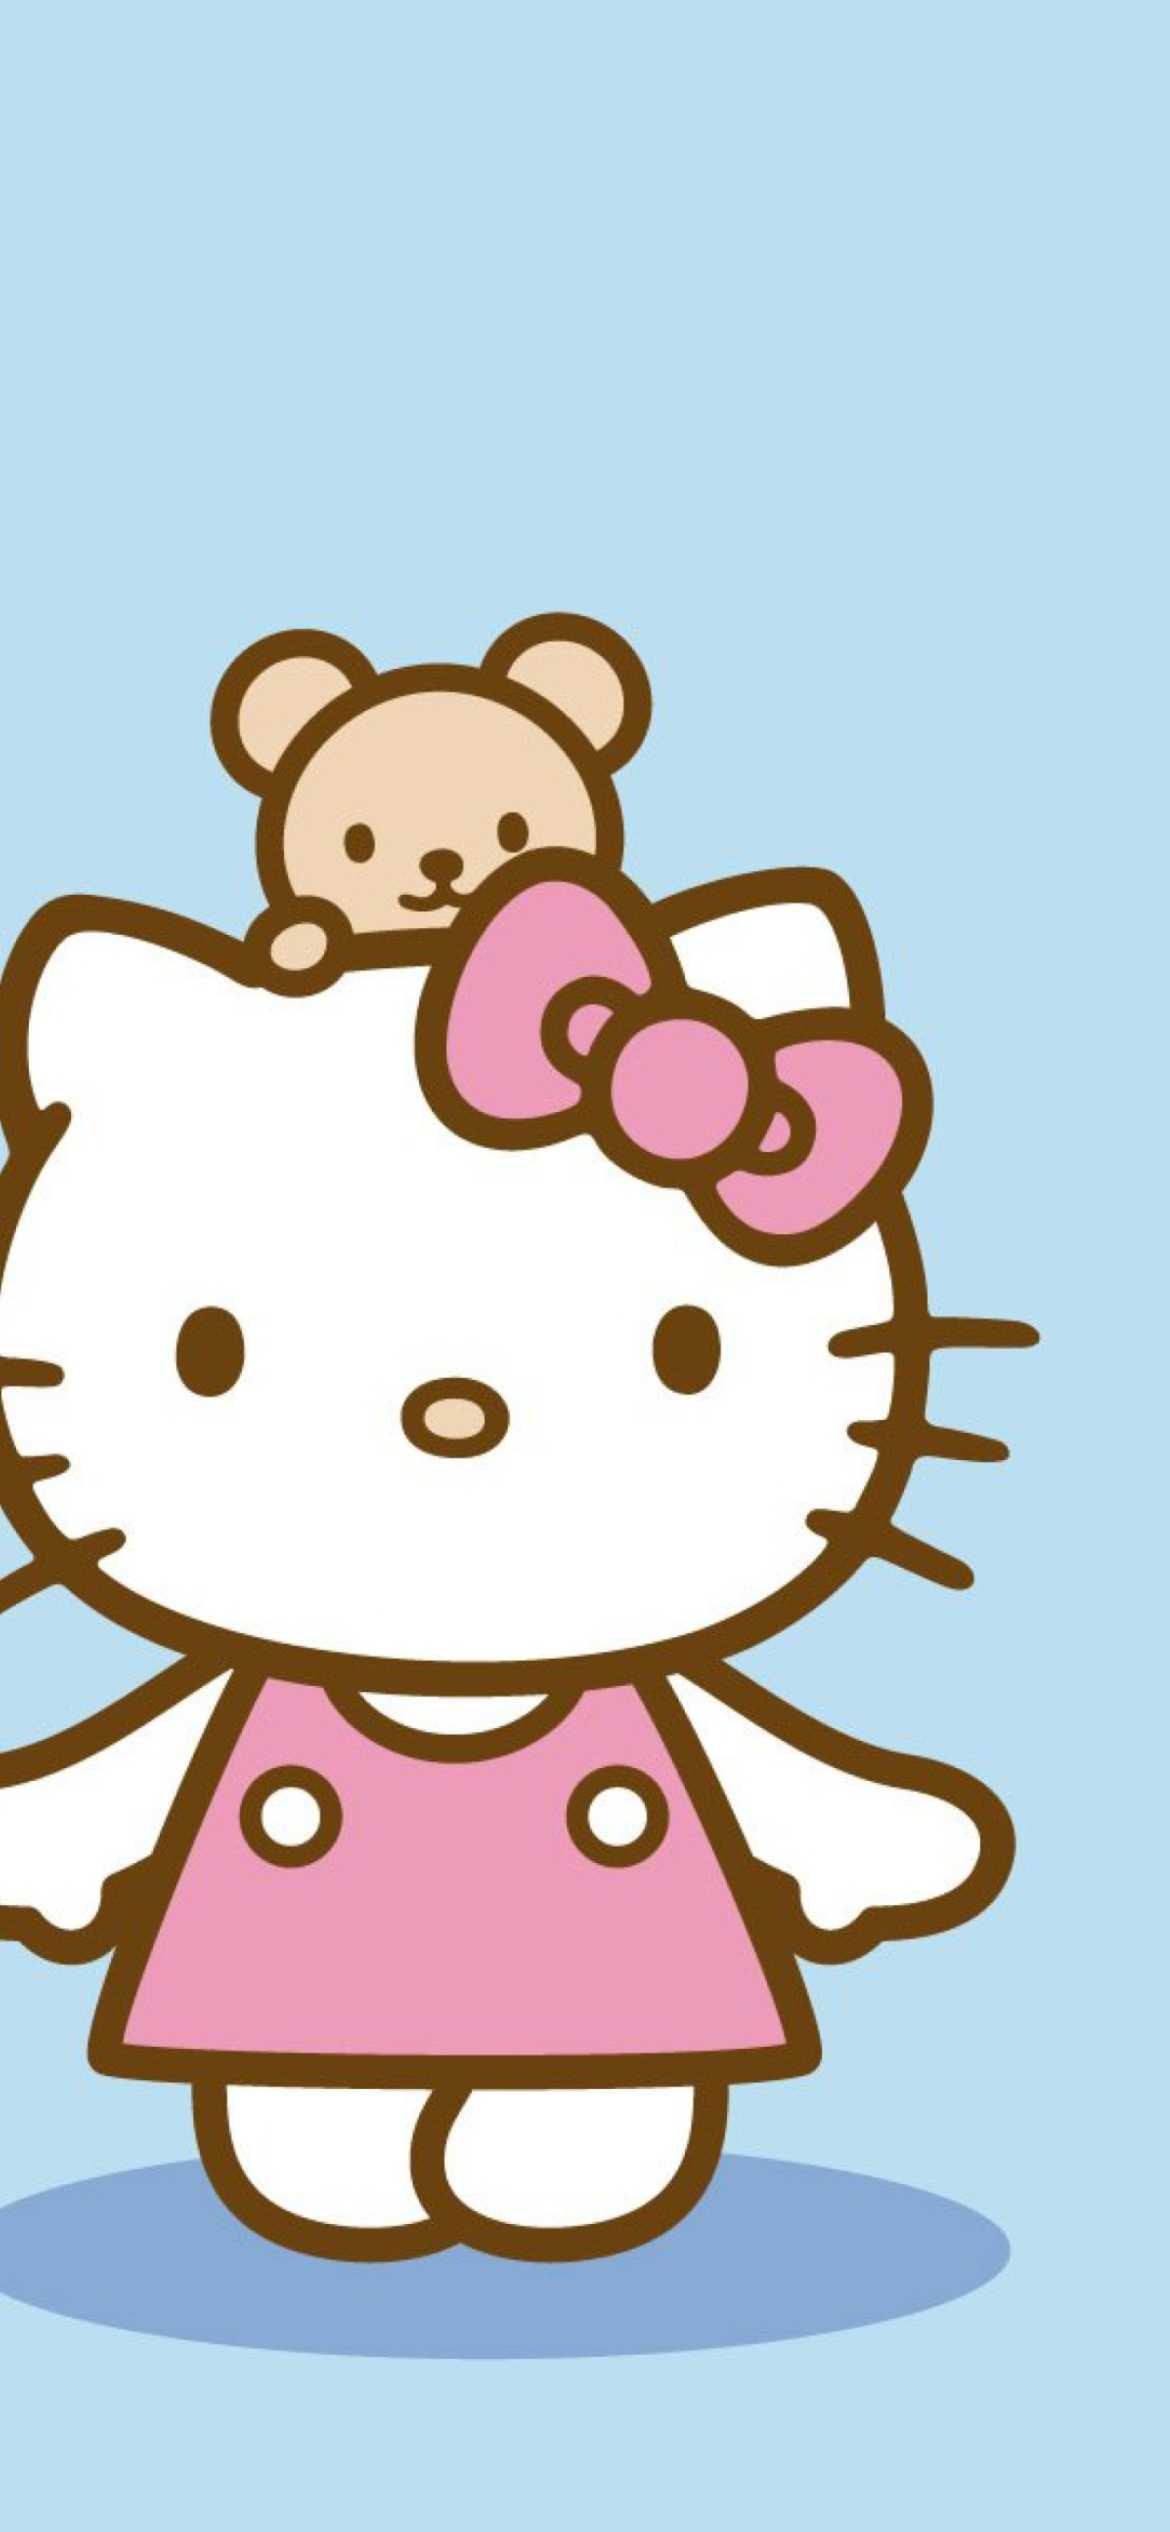 Hello Kitty Wallpaper - VoBss